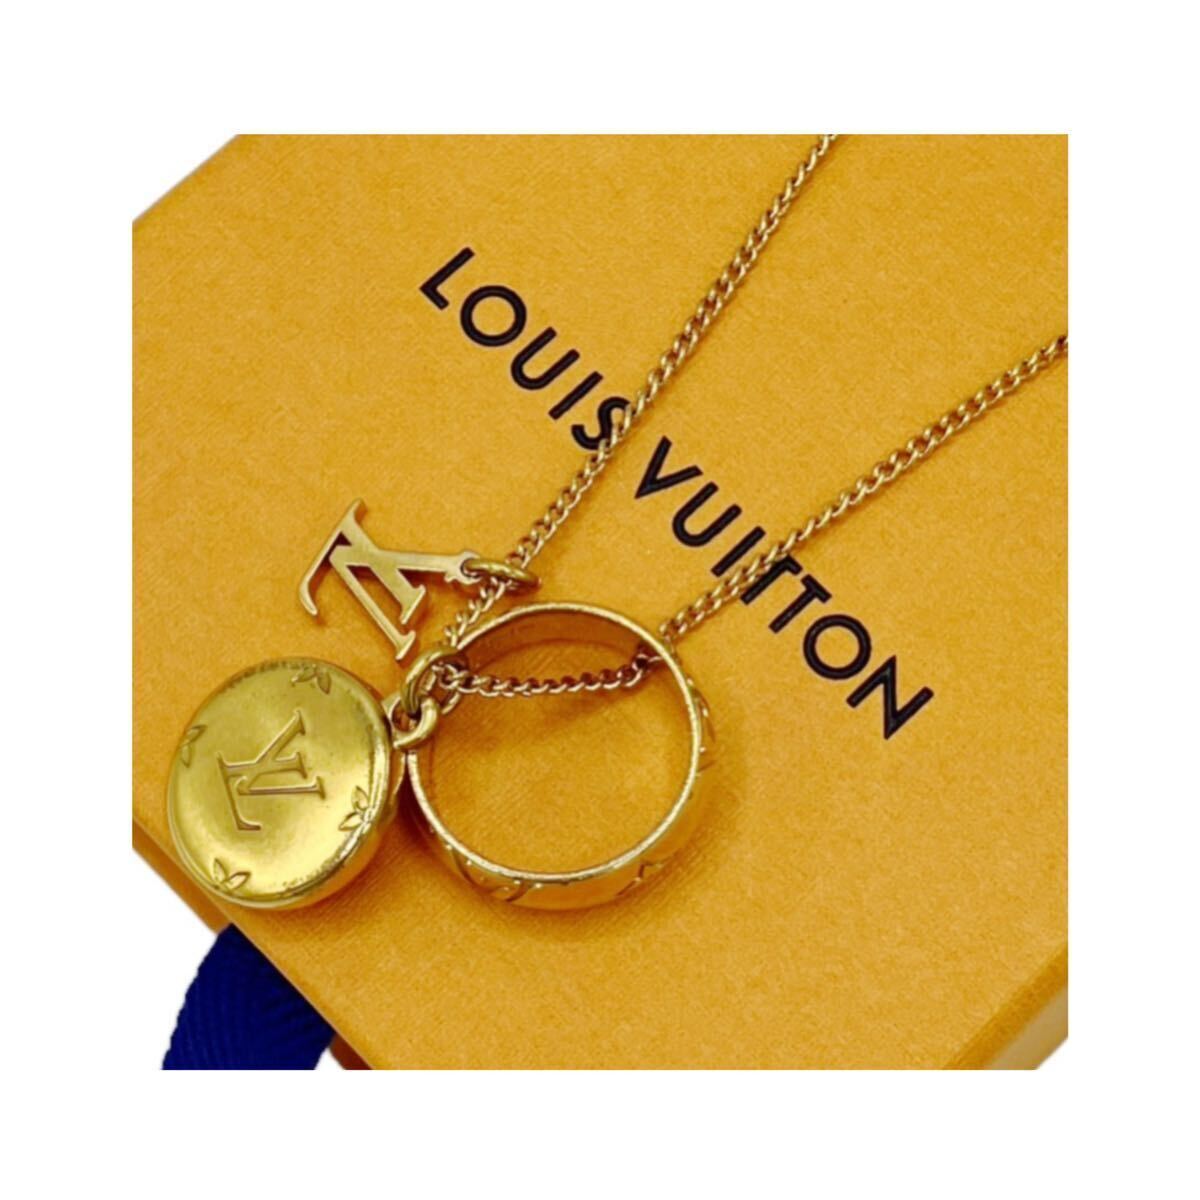 [ хорошая вещь ] Louis Vuitton LOUIS VUITTON M80189 кольцо колье монограмма подвеска Gold аксессуары 